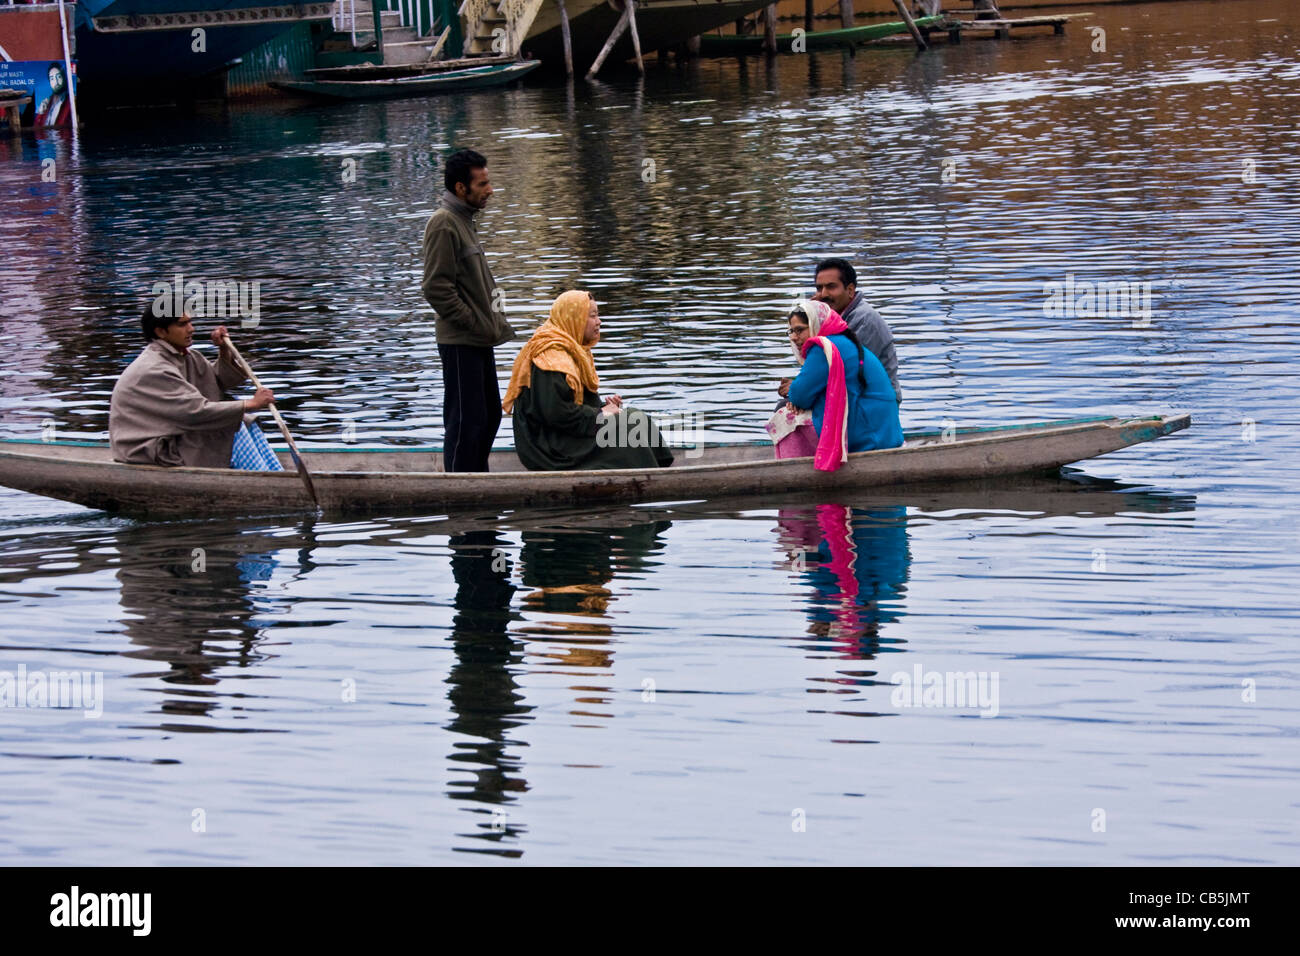 Scène quotidienne de la vie du lac Dal, Srinagar, Cachemire, Inde, avec les villageois dans leur canoë/bateau/bateau de campagne/shikara qui fait le trajet entre le lac. Banque D'Images